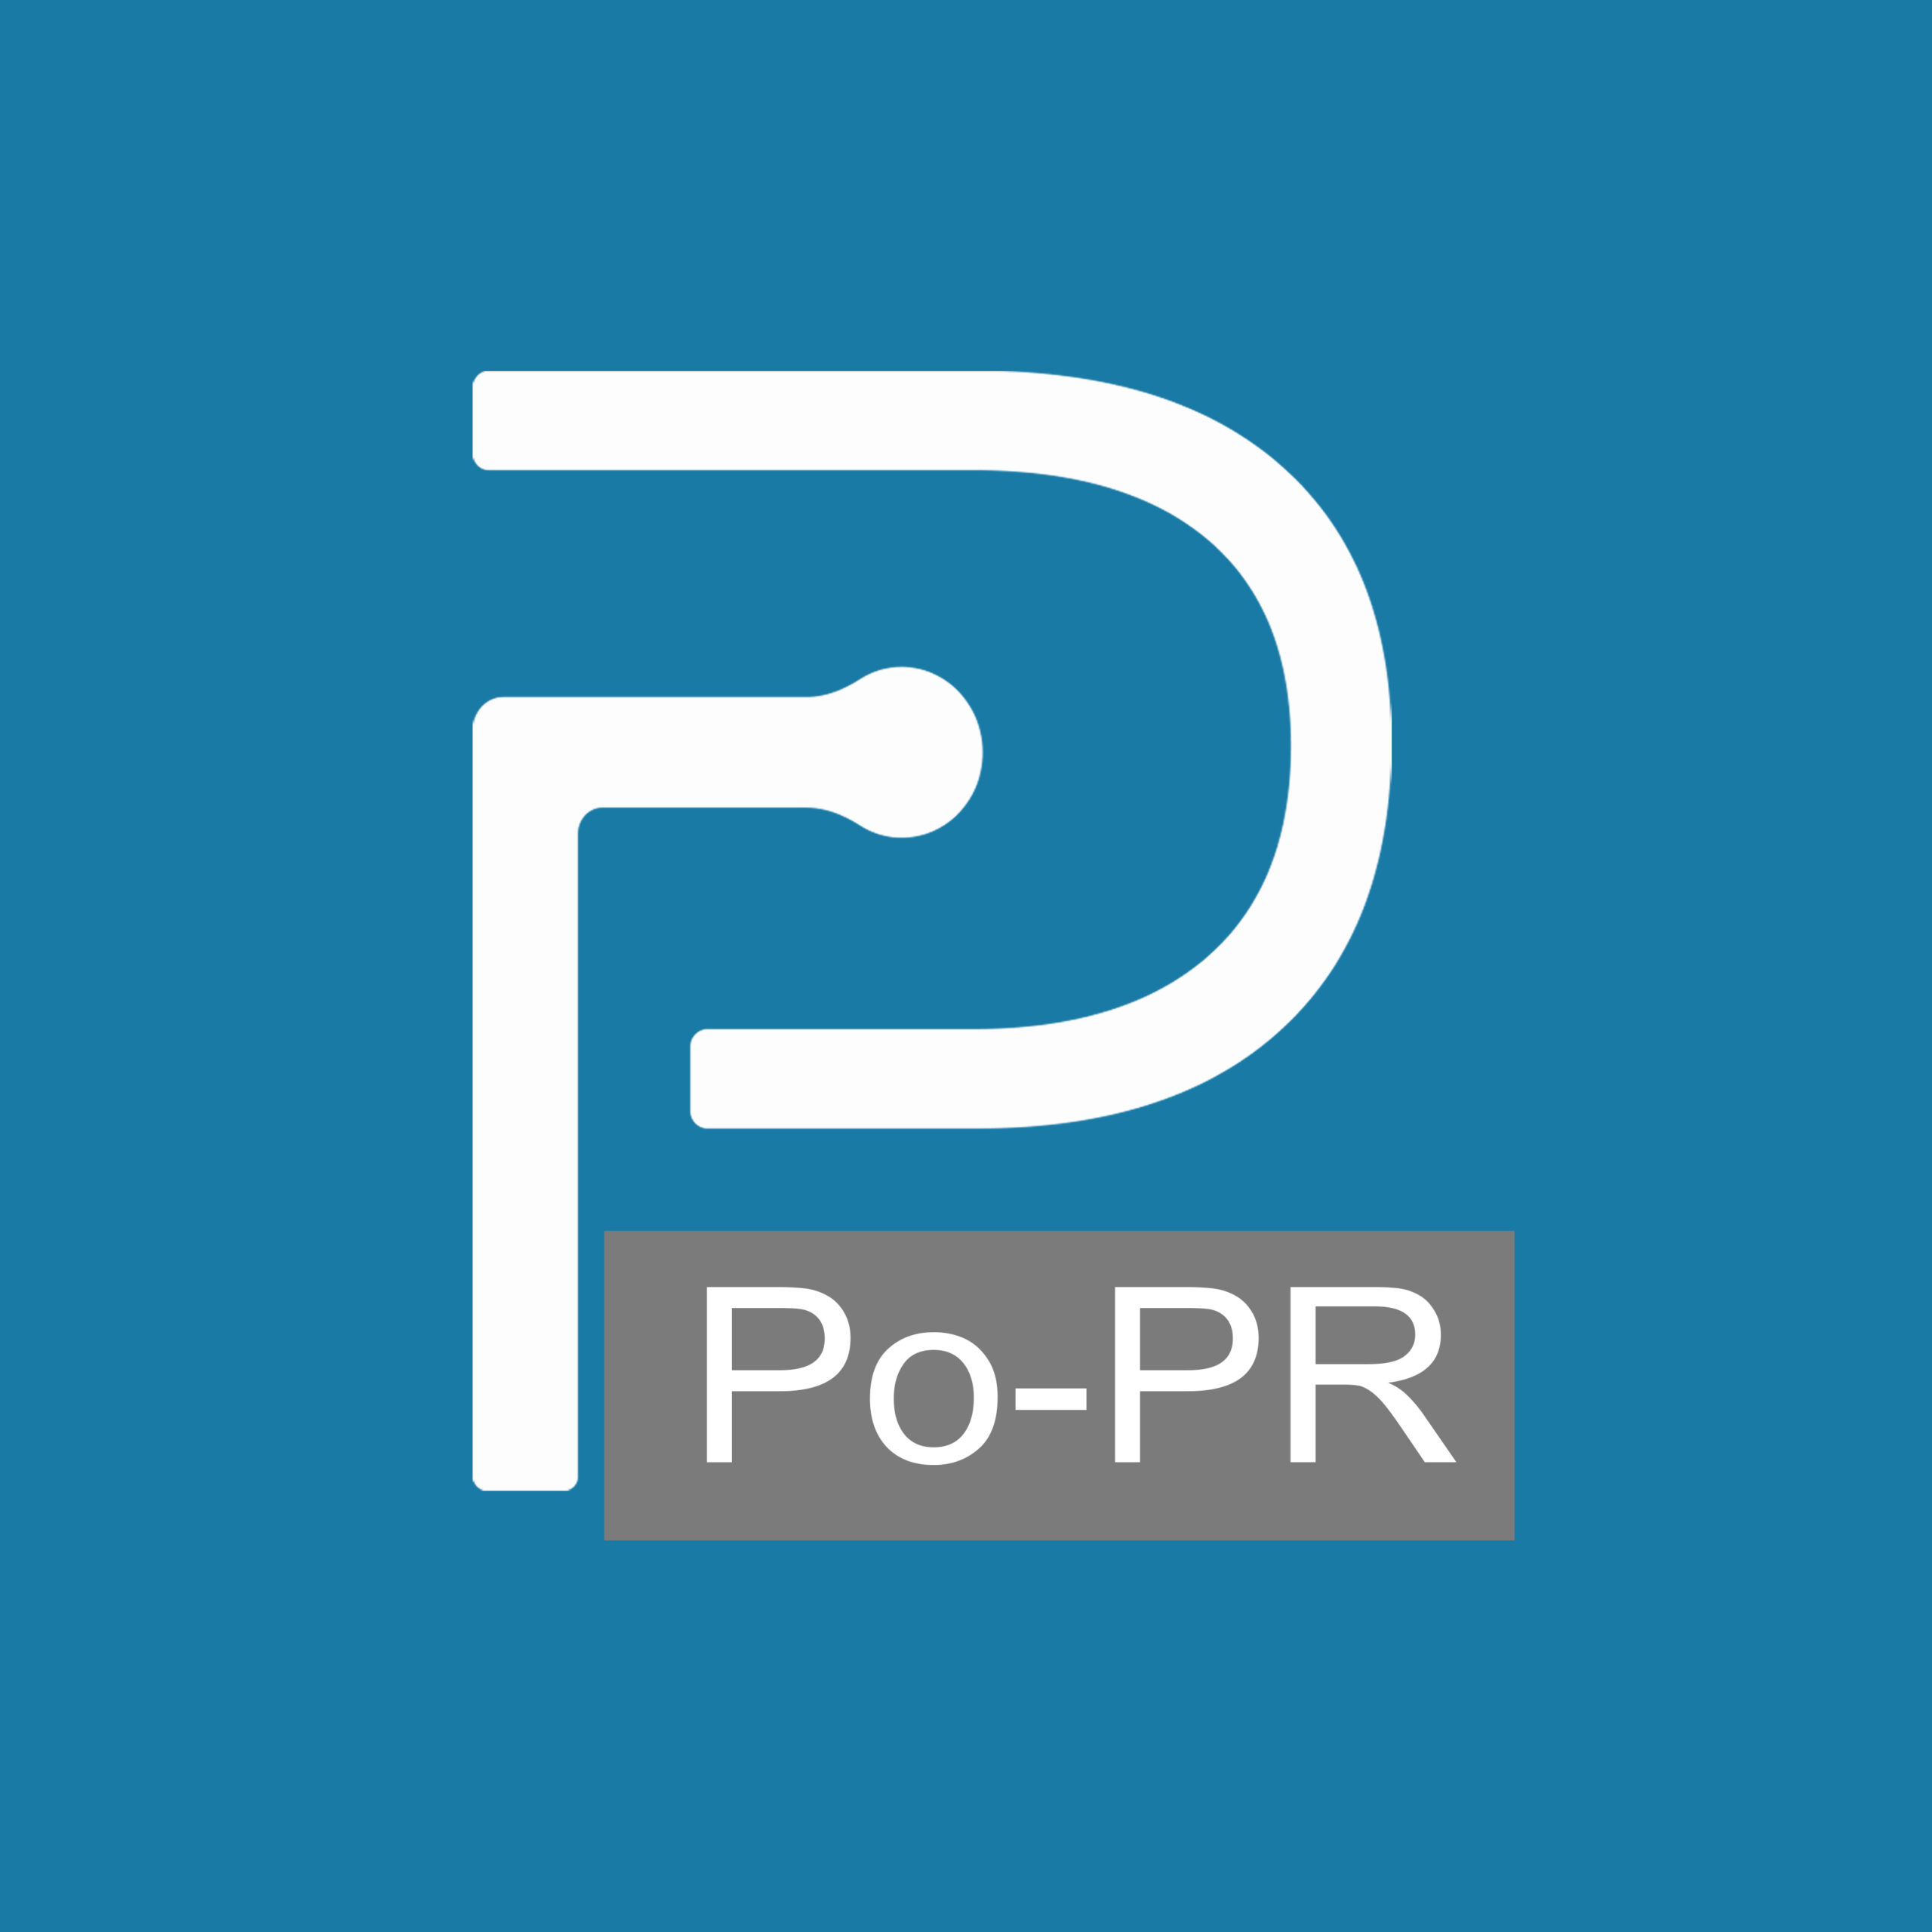 PO-PR รับลงข่าวประชาสัมพันธ์ ฝากข่าวกับสำนักข่าวใหญ่